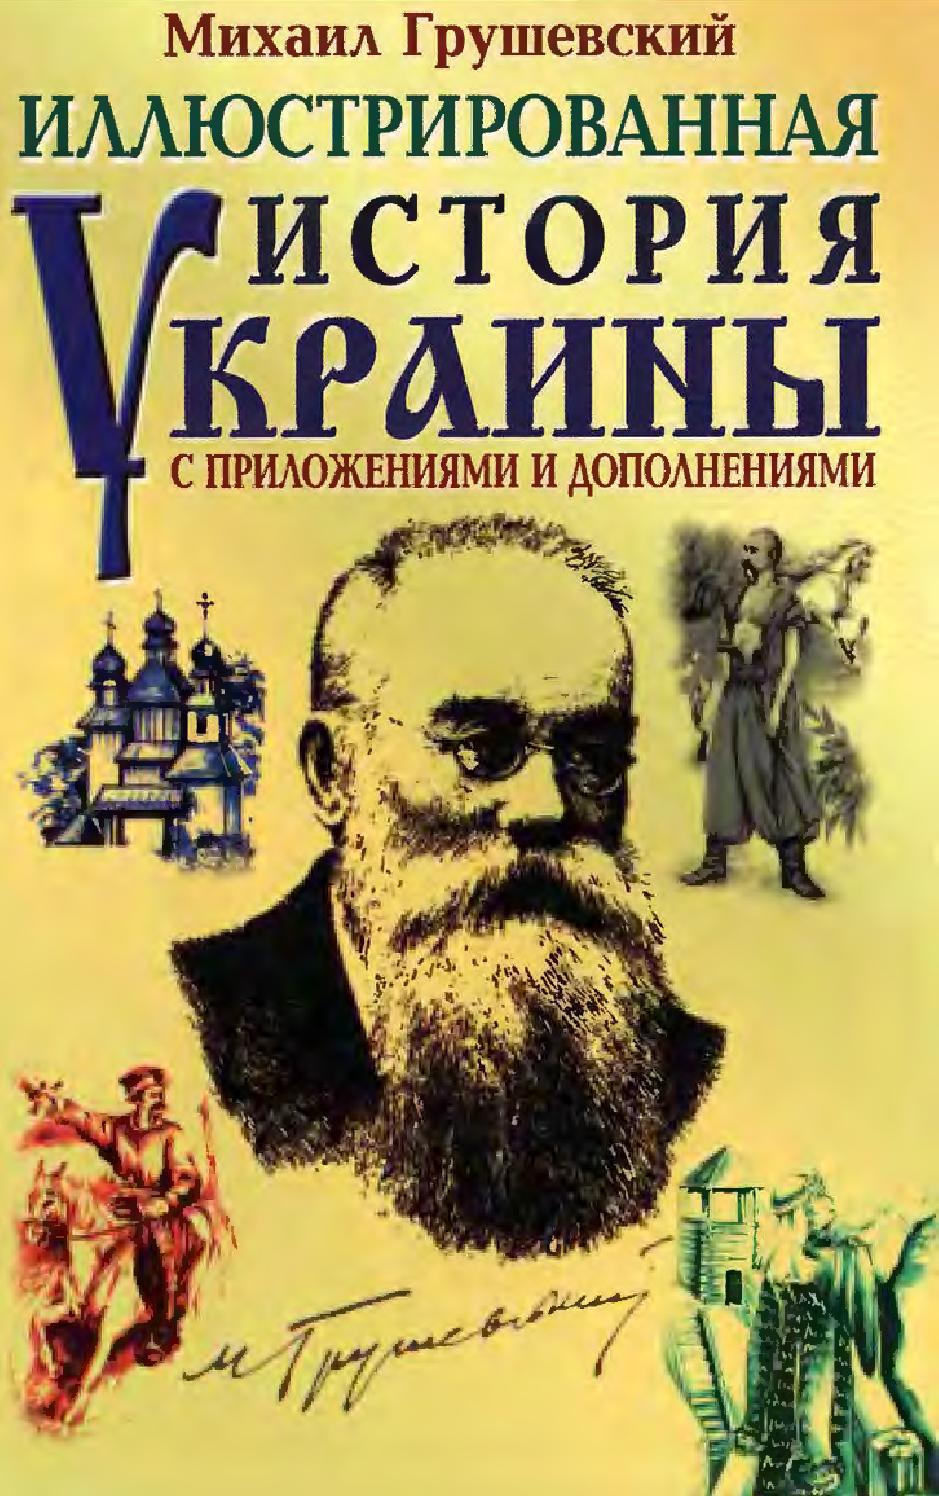 Иллюстрированная история Украины с приложениями и дополнениями. Часть 2, 2004, Михаил Грушевский